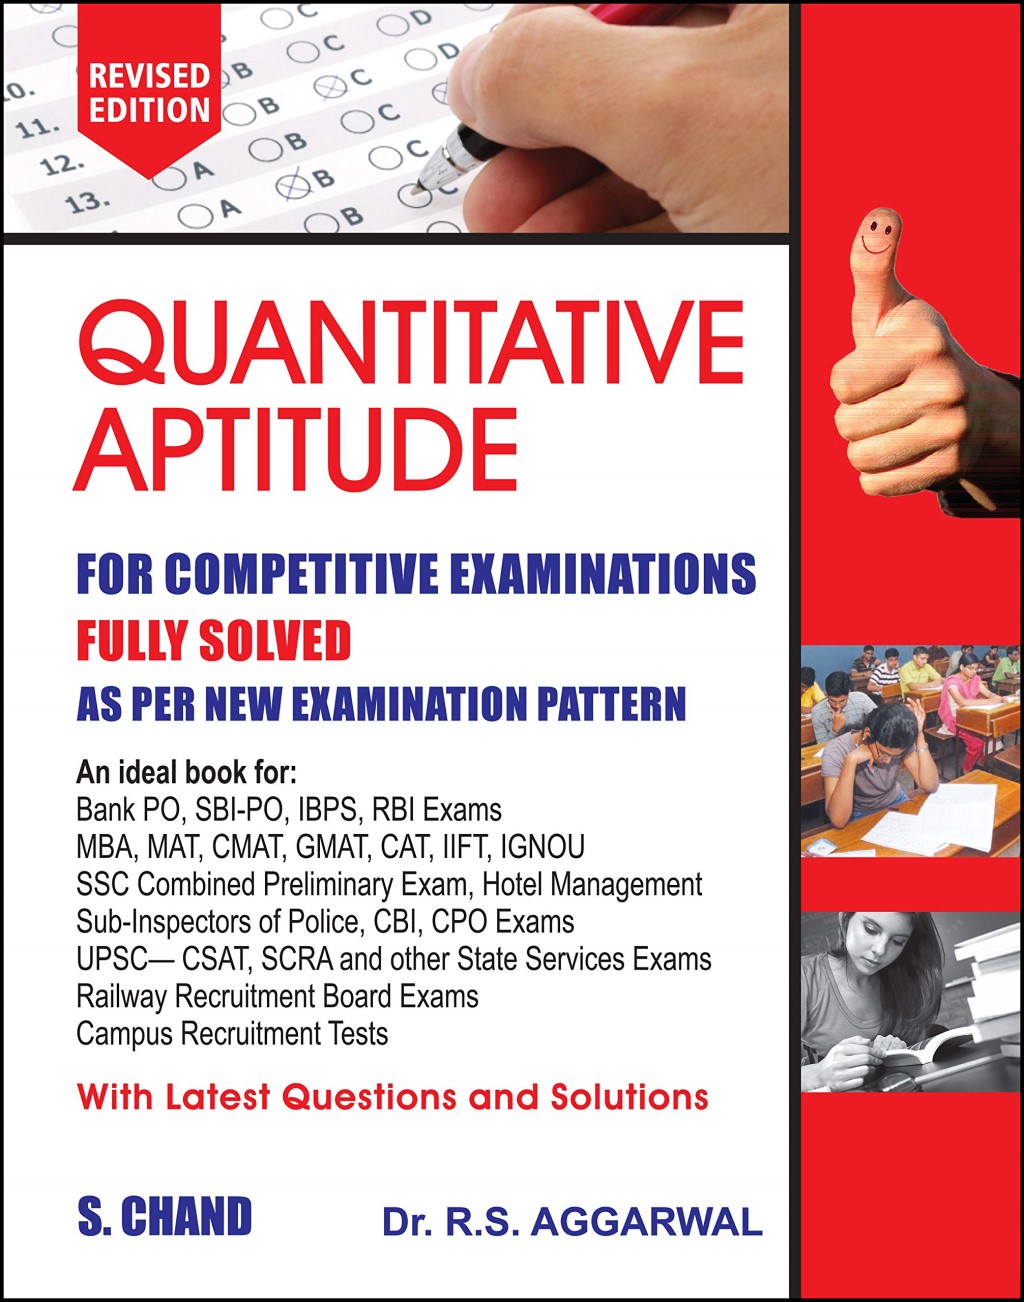 5-best-quantitative-aptitude-books-for-competitive-exams-in-india